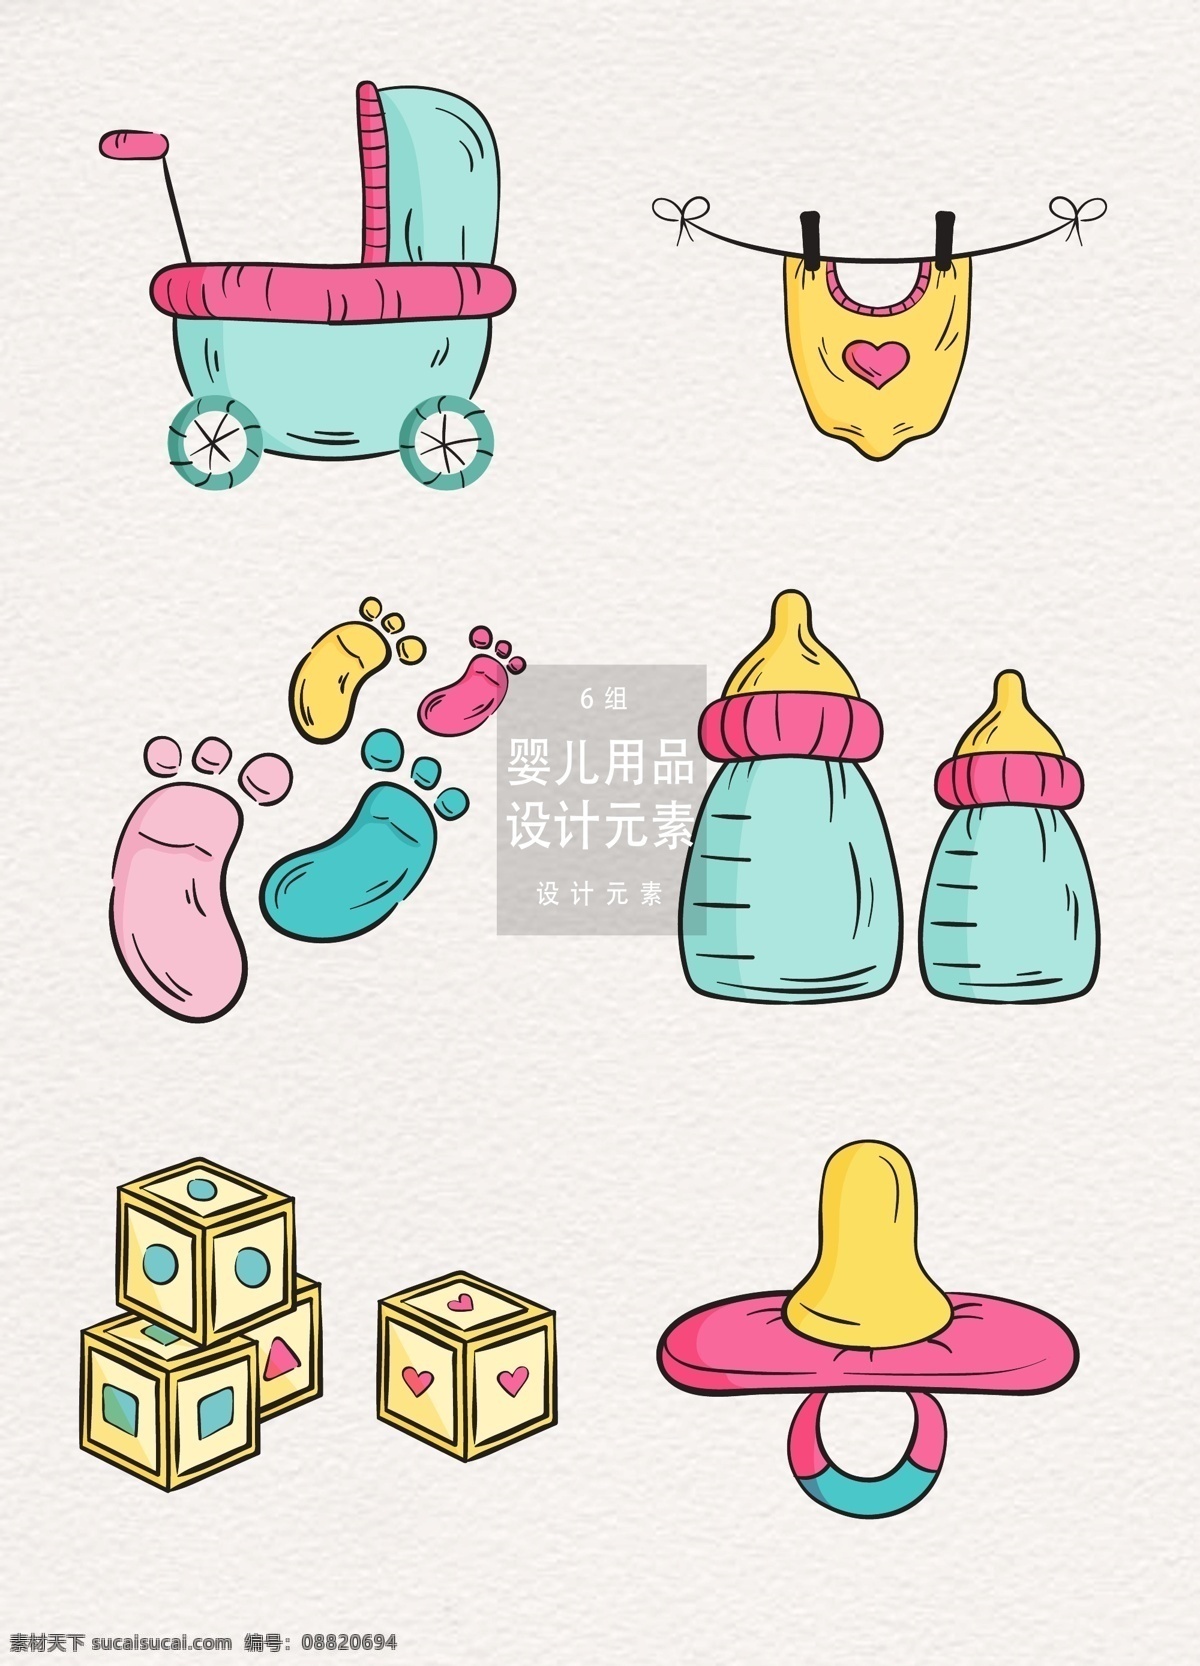 手绘 婴儿用品 装饰 图案 设计元素 生日 脚印 玩具 婴儿 婴儿日用品 日用品 宝宝 庆生 婴儿床 奶瓶 奶嘴